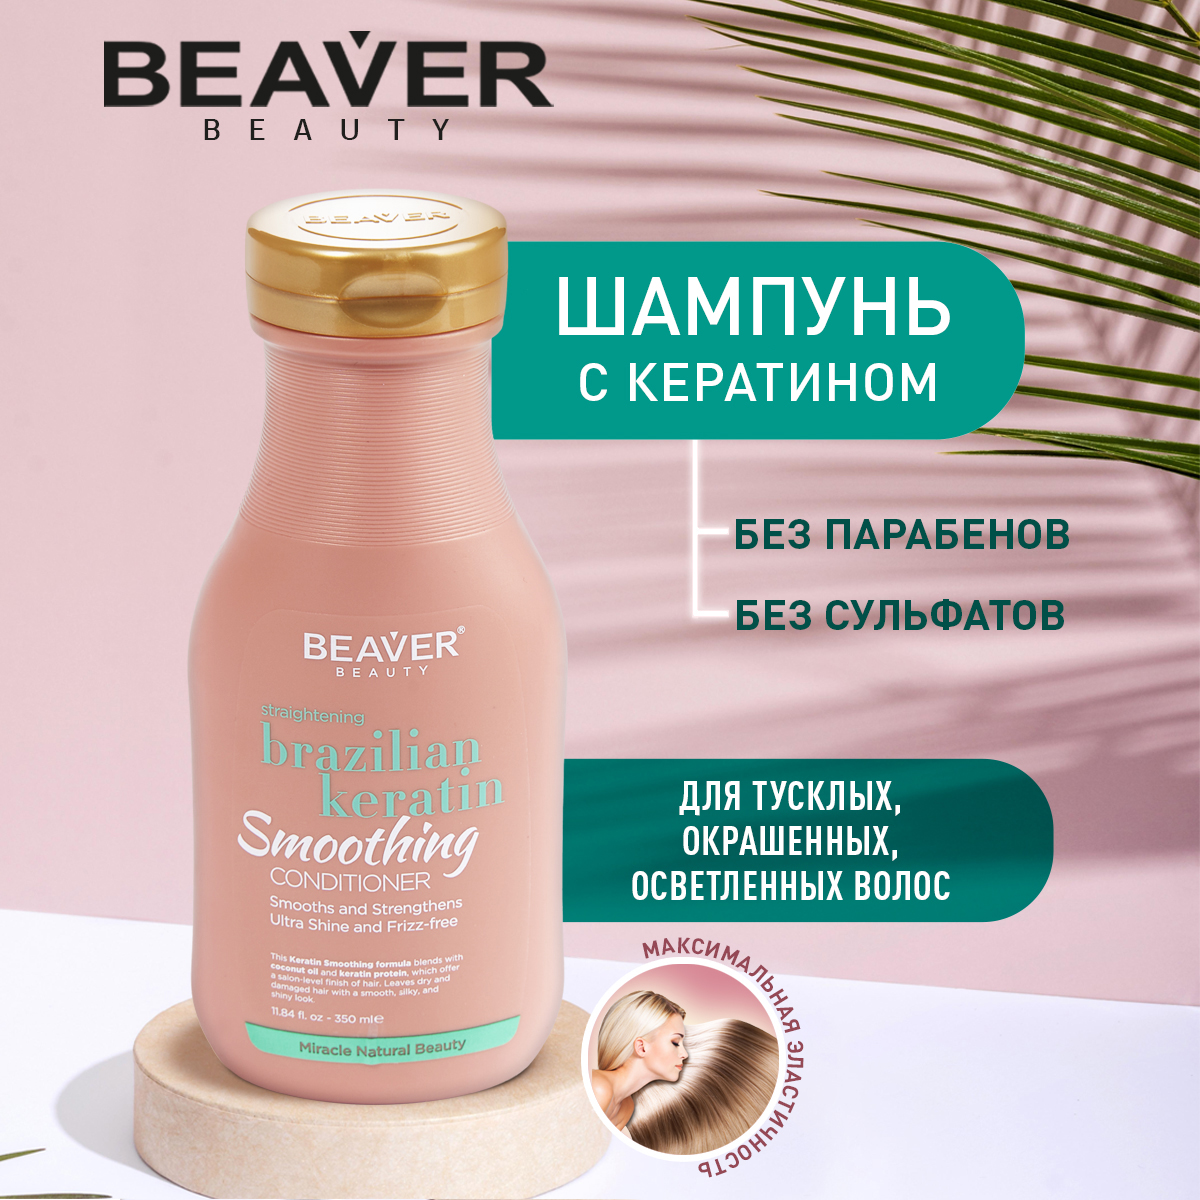 Шампунь Beaver с кератином для эластичности волос 350 мл шампунь для защиты кератина luxeoil 8537 200 мл